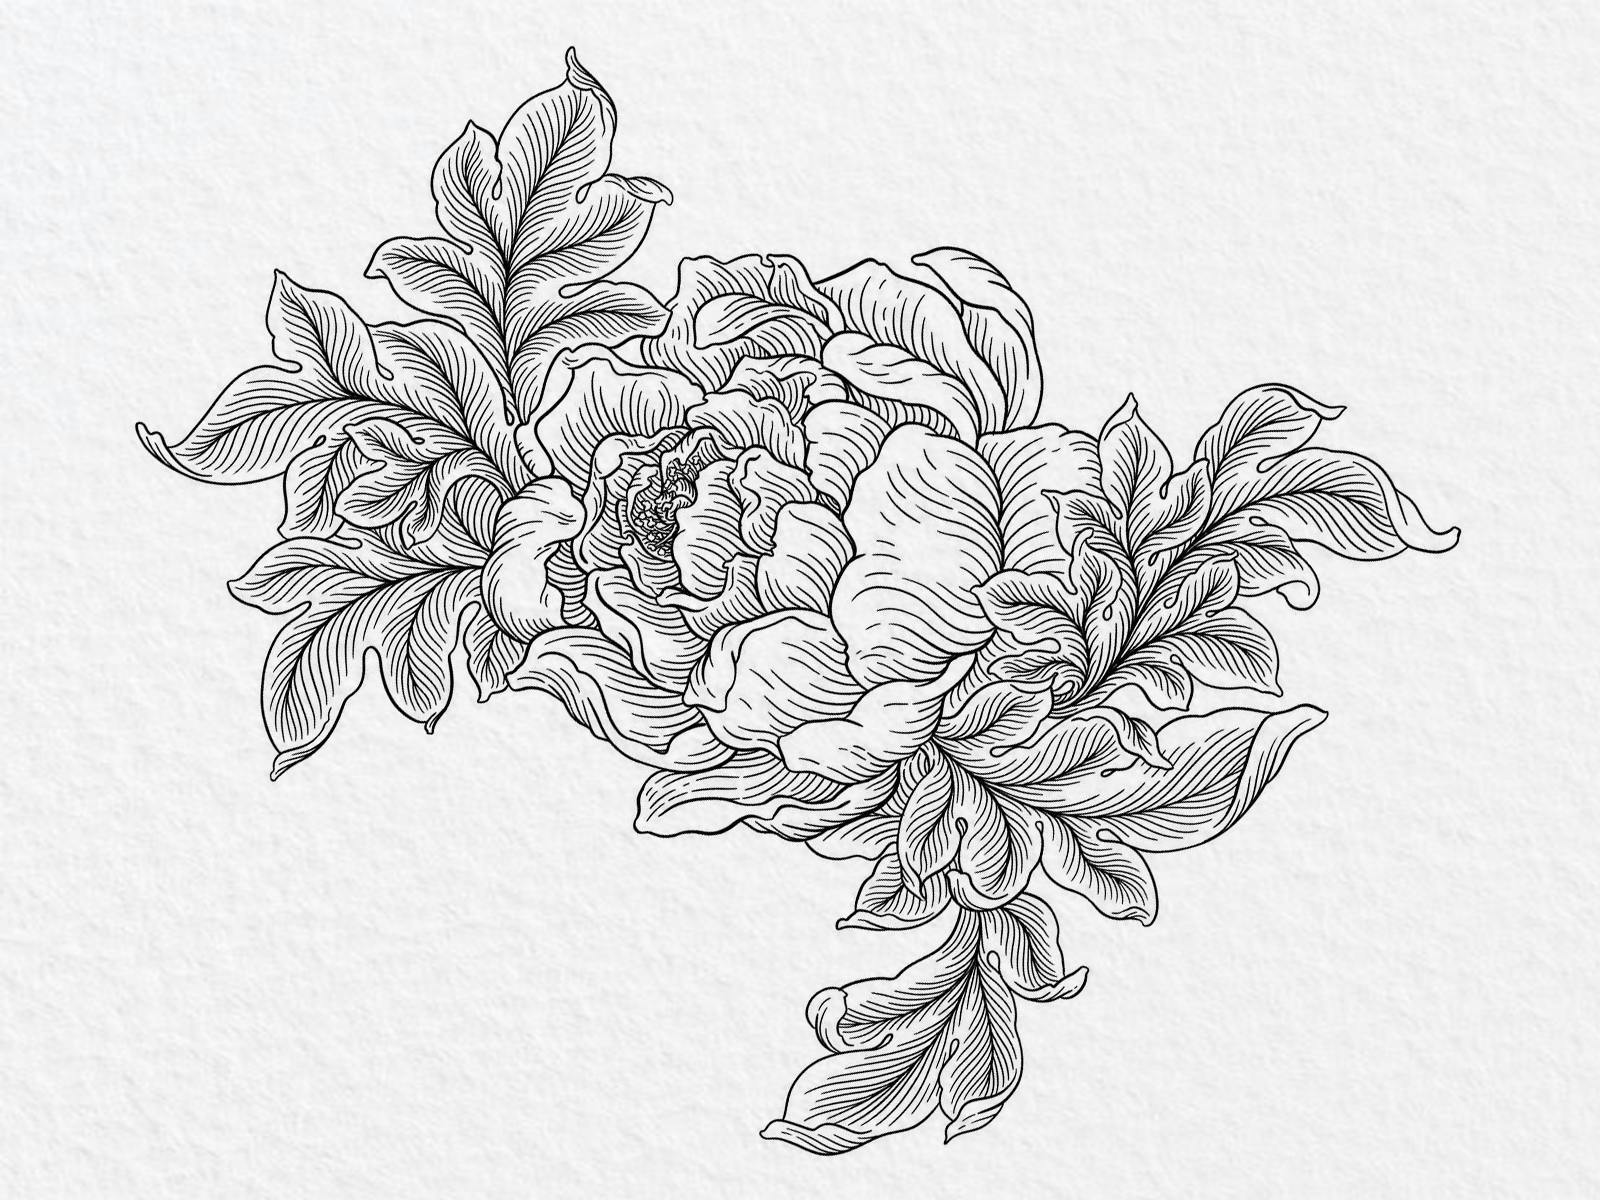 Illustration au trait noir sur papier d'une rose